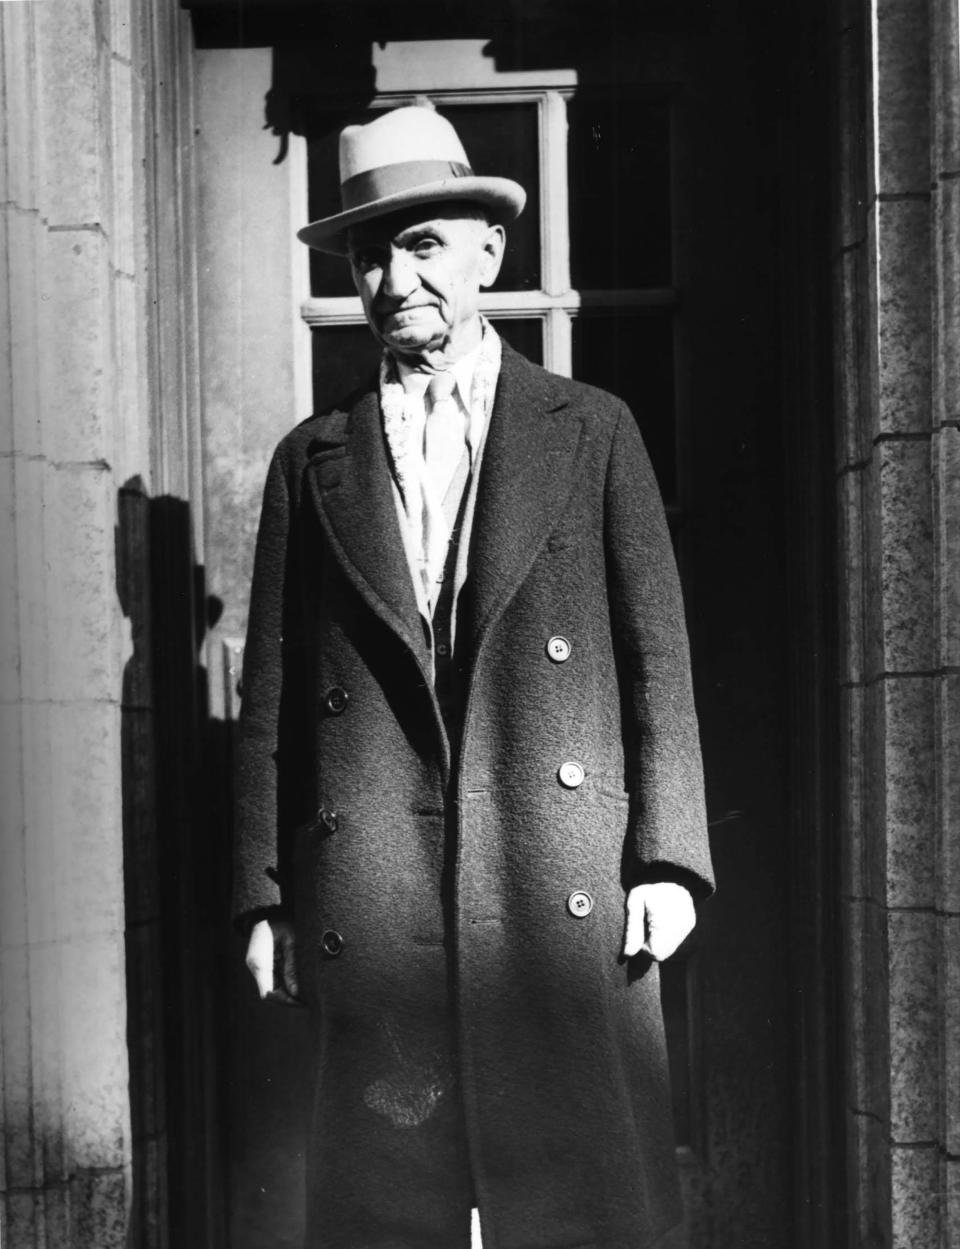 George Dale was elected as Muncie’s mayor in 1929.